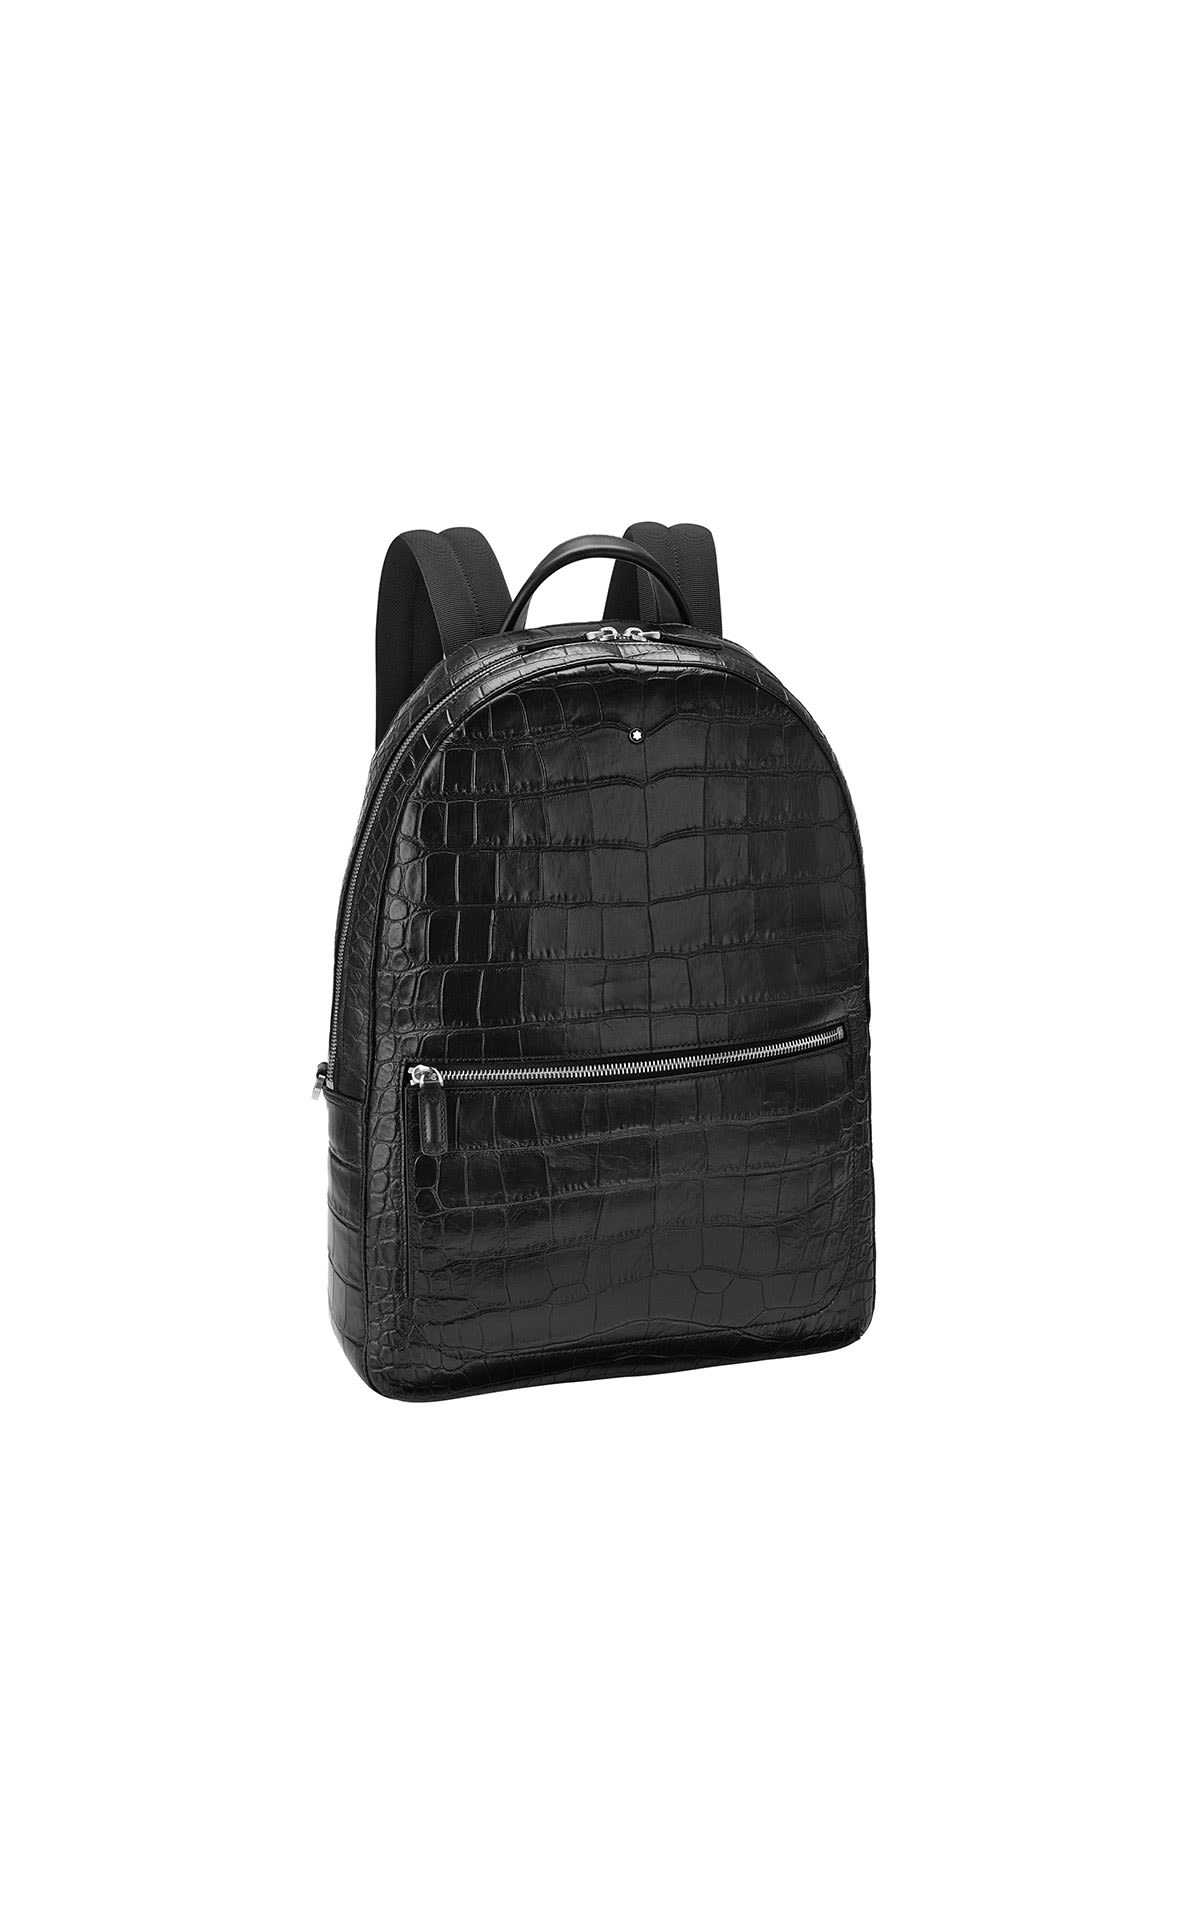 Montblanc MST selection backpack slim bk from Bicester Village